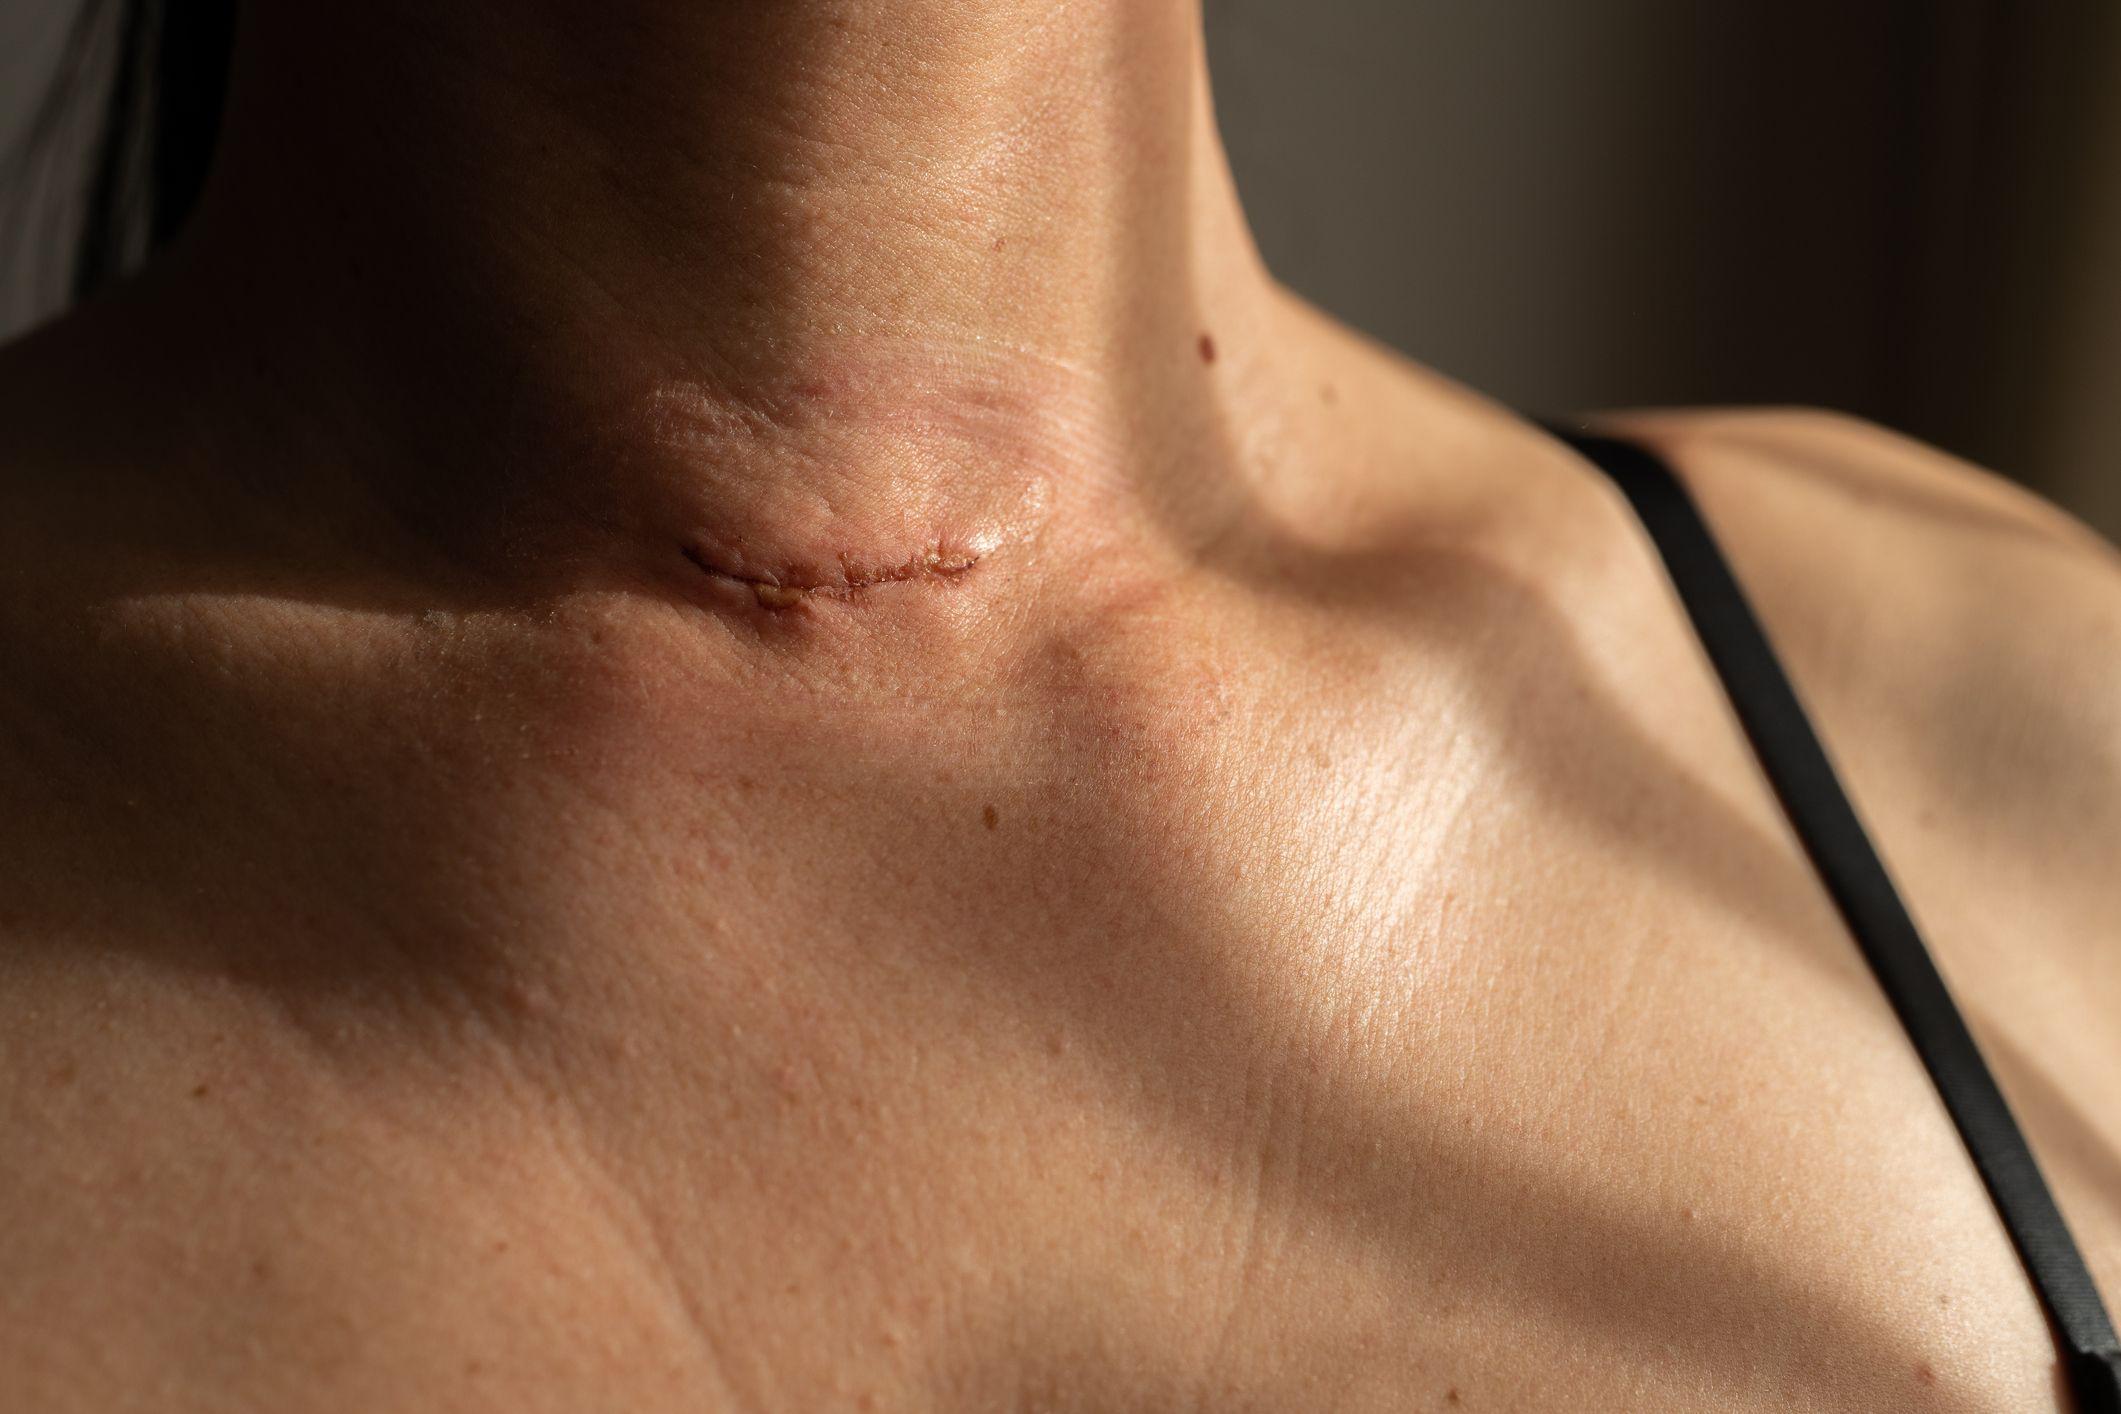 ندبة جراحية على رقبة امرأة بعد استئصال الغدة الدرقية.